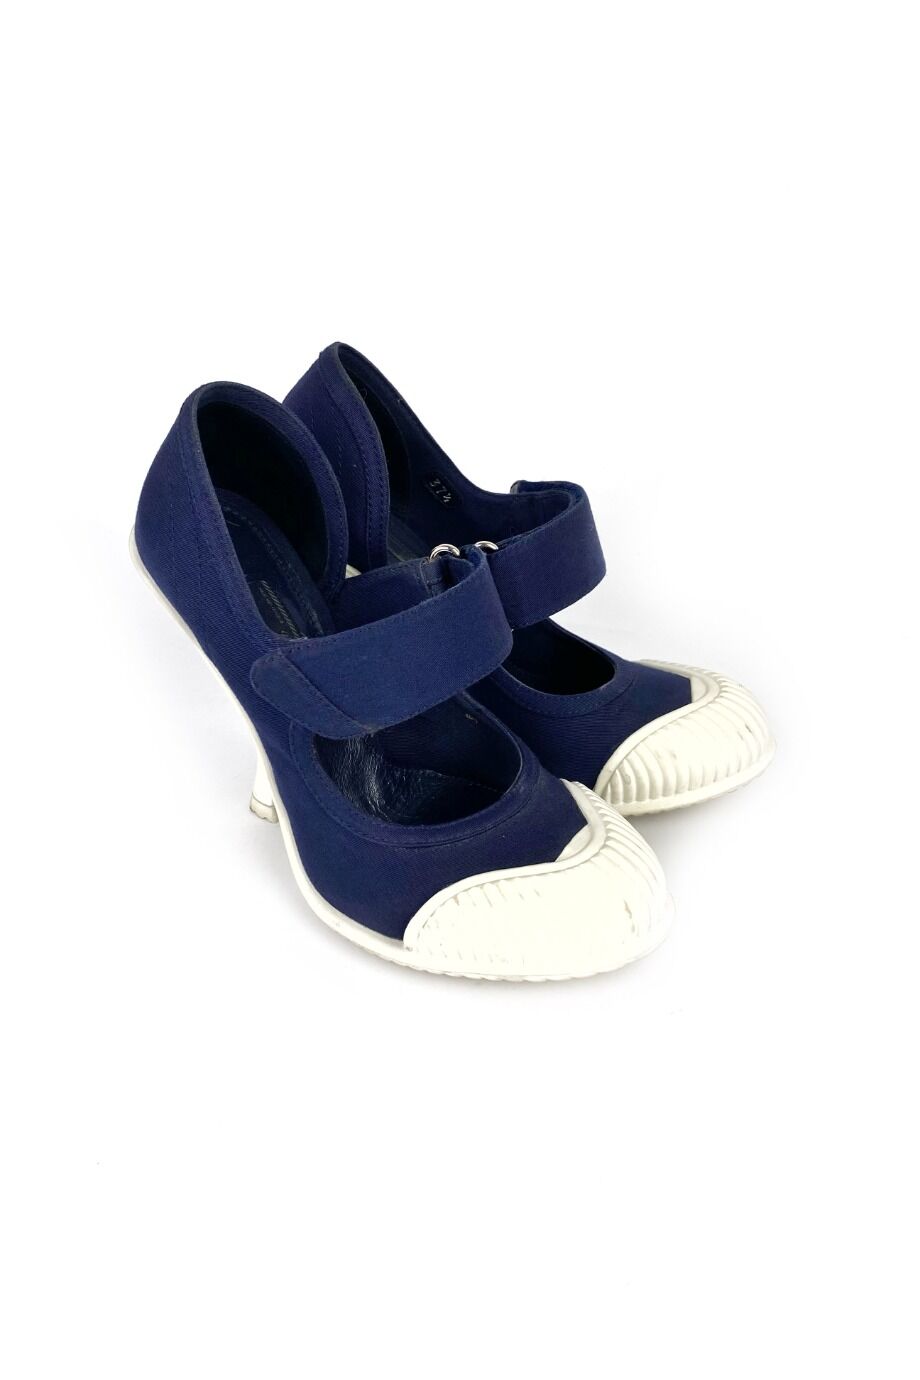 image 1 Комбинированные туфли синего цвета на липучке